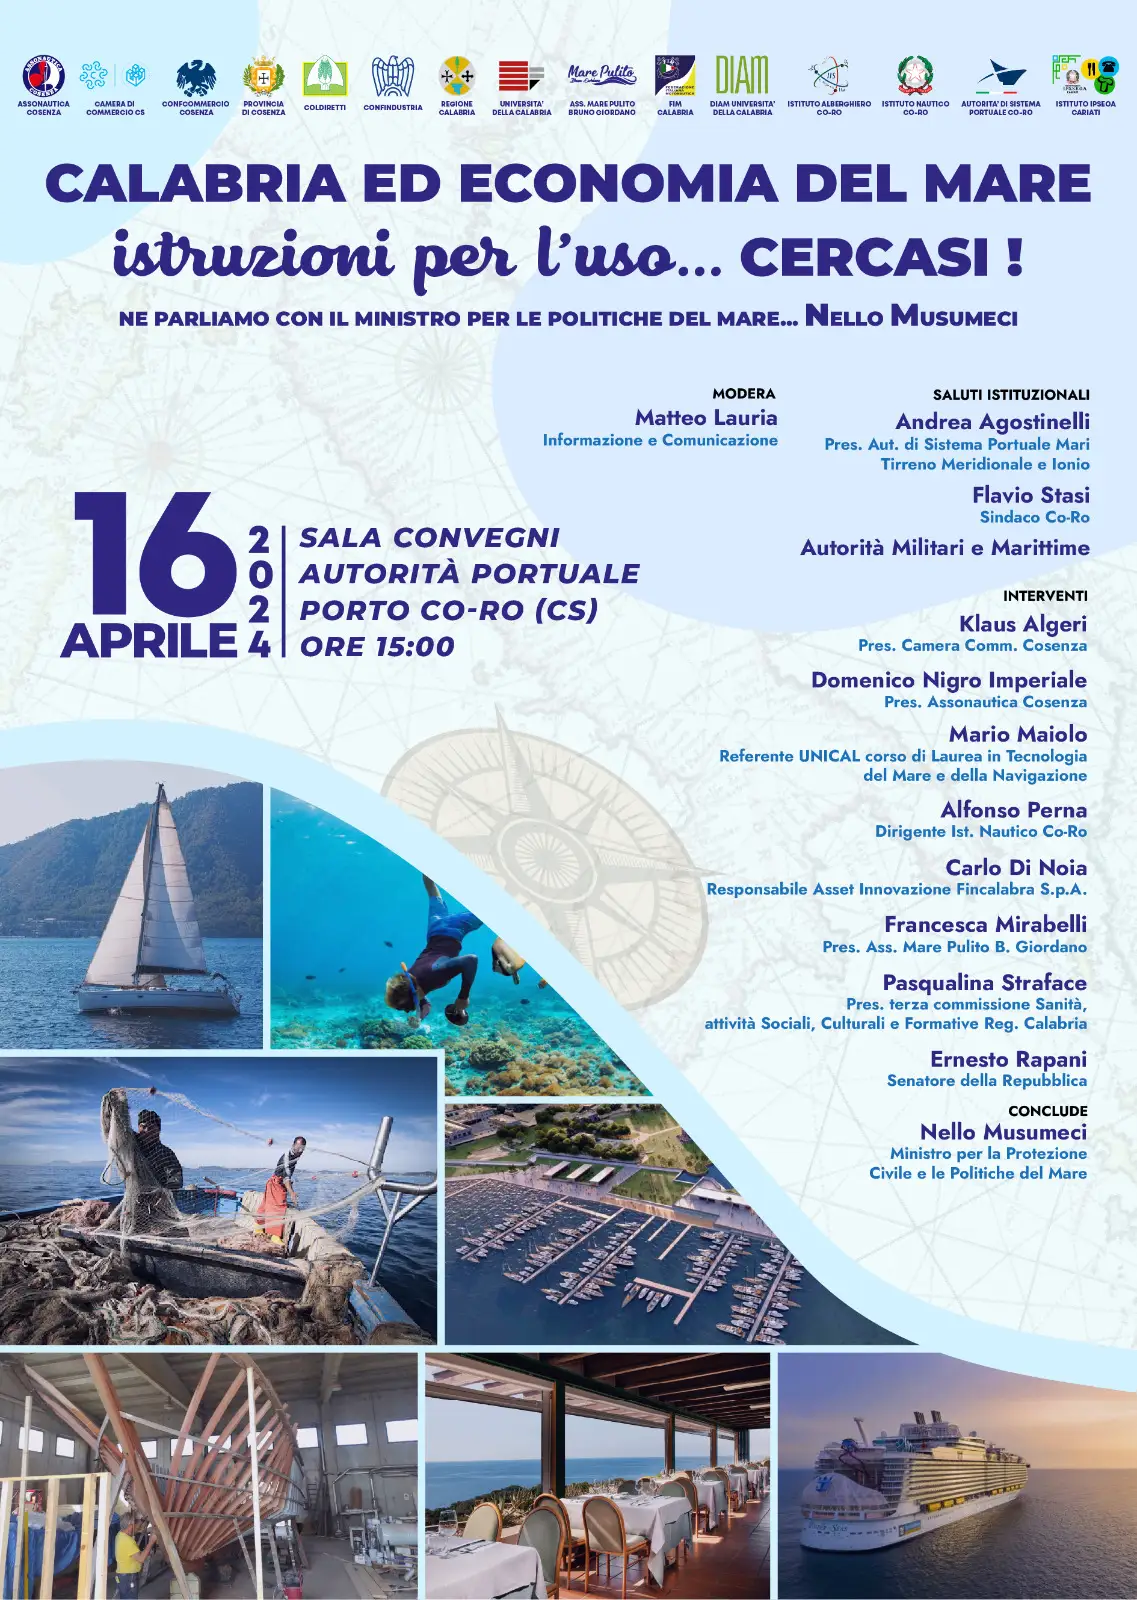 DIAm Calabria ed economia del mare